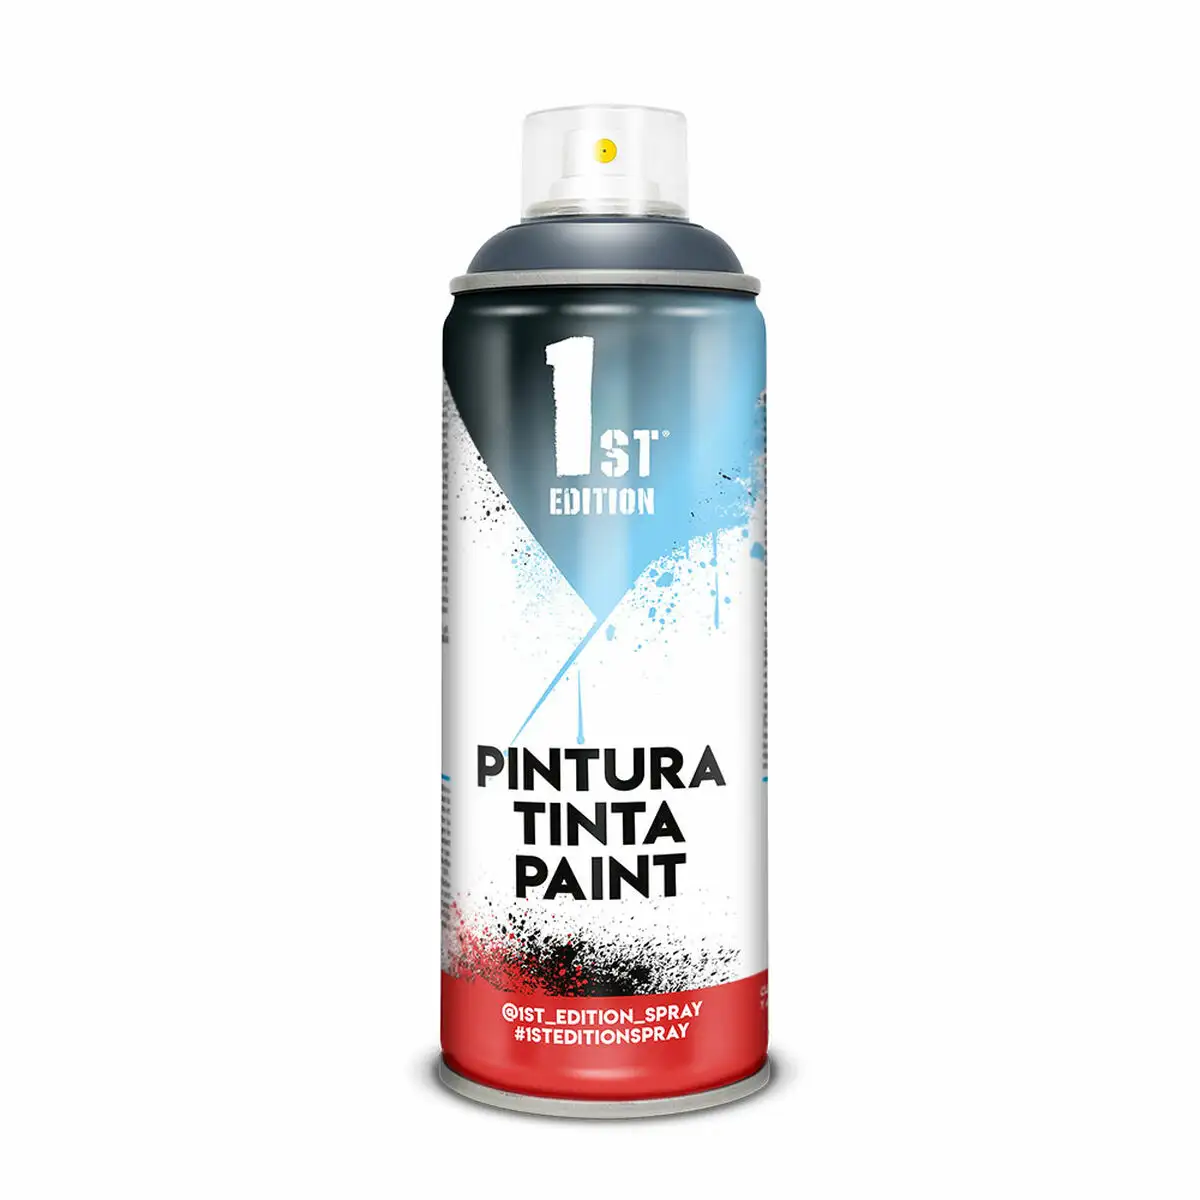 Peinture en spray 1st edition 660 mercury grey 300 ml_7521. DIAYTAR SENEGAL - L'Art du Shopping Distinctif. Naviguez à travers notre gamme soigneusement sélectionnée et choisissez des produits qui définissent votre mode de vie.